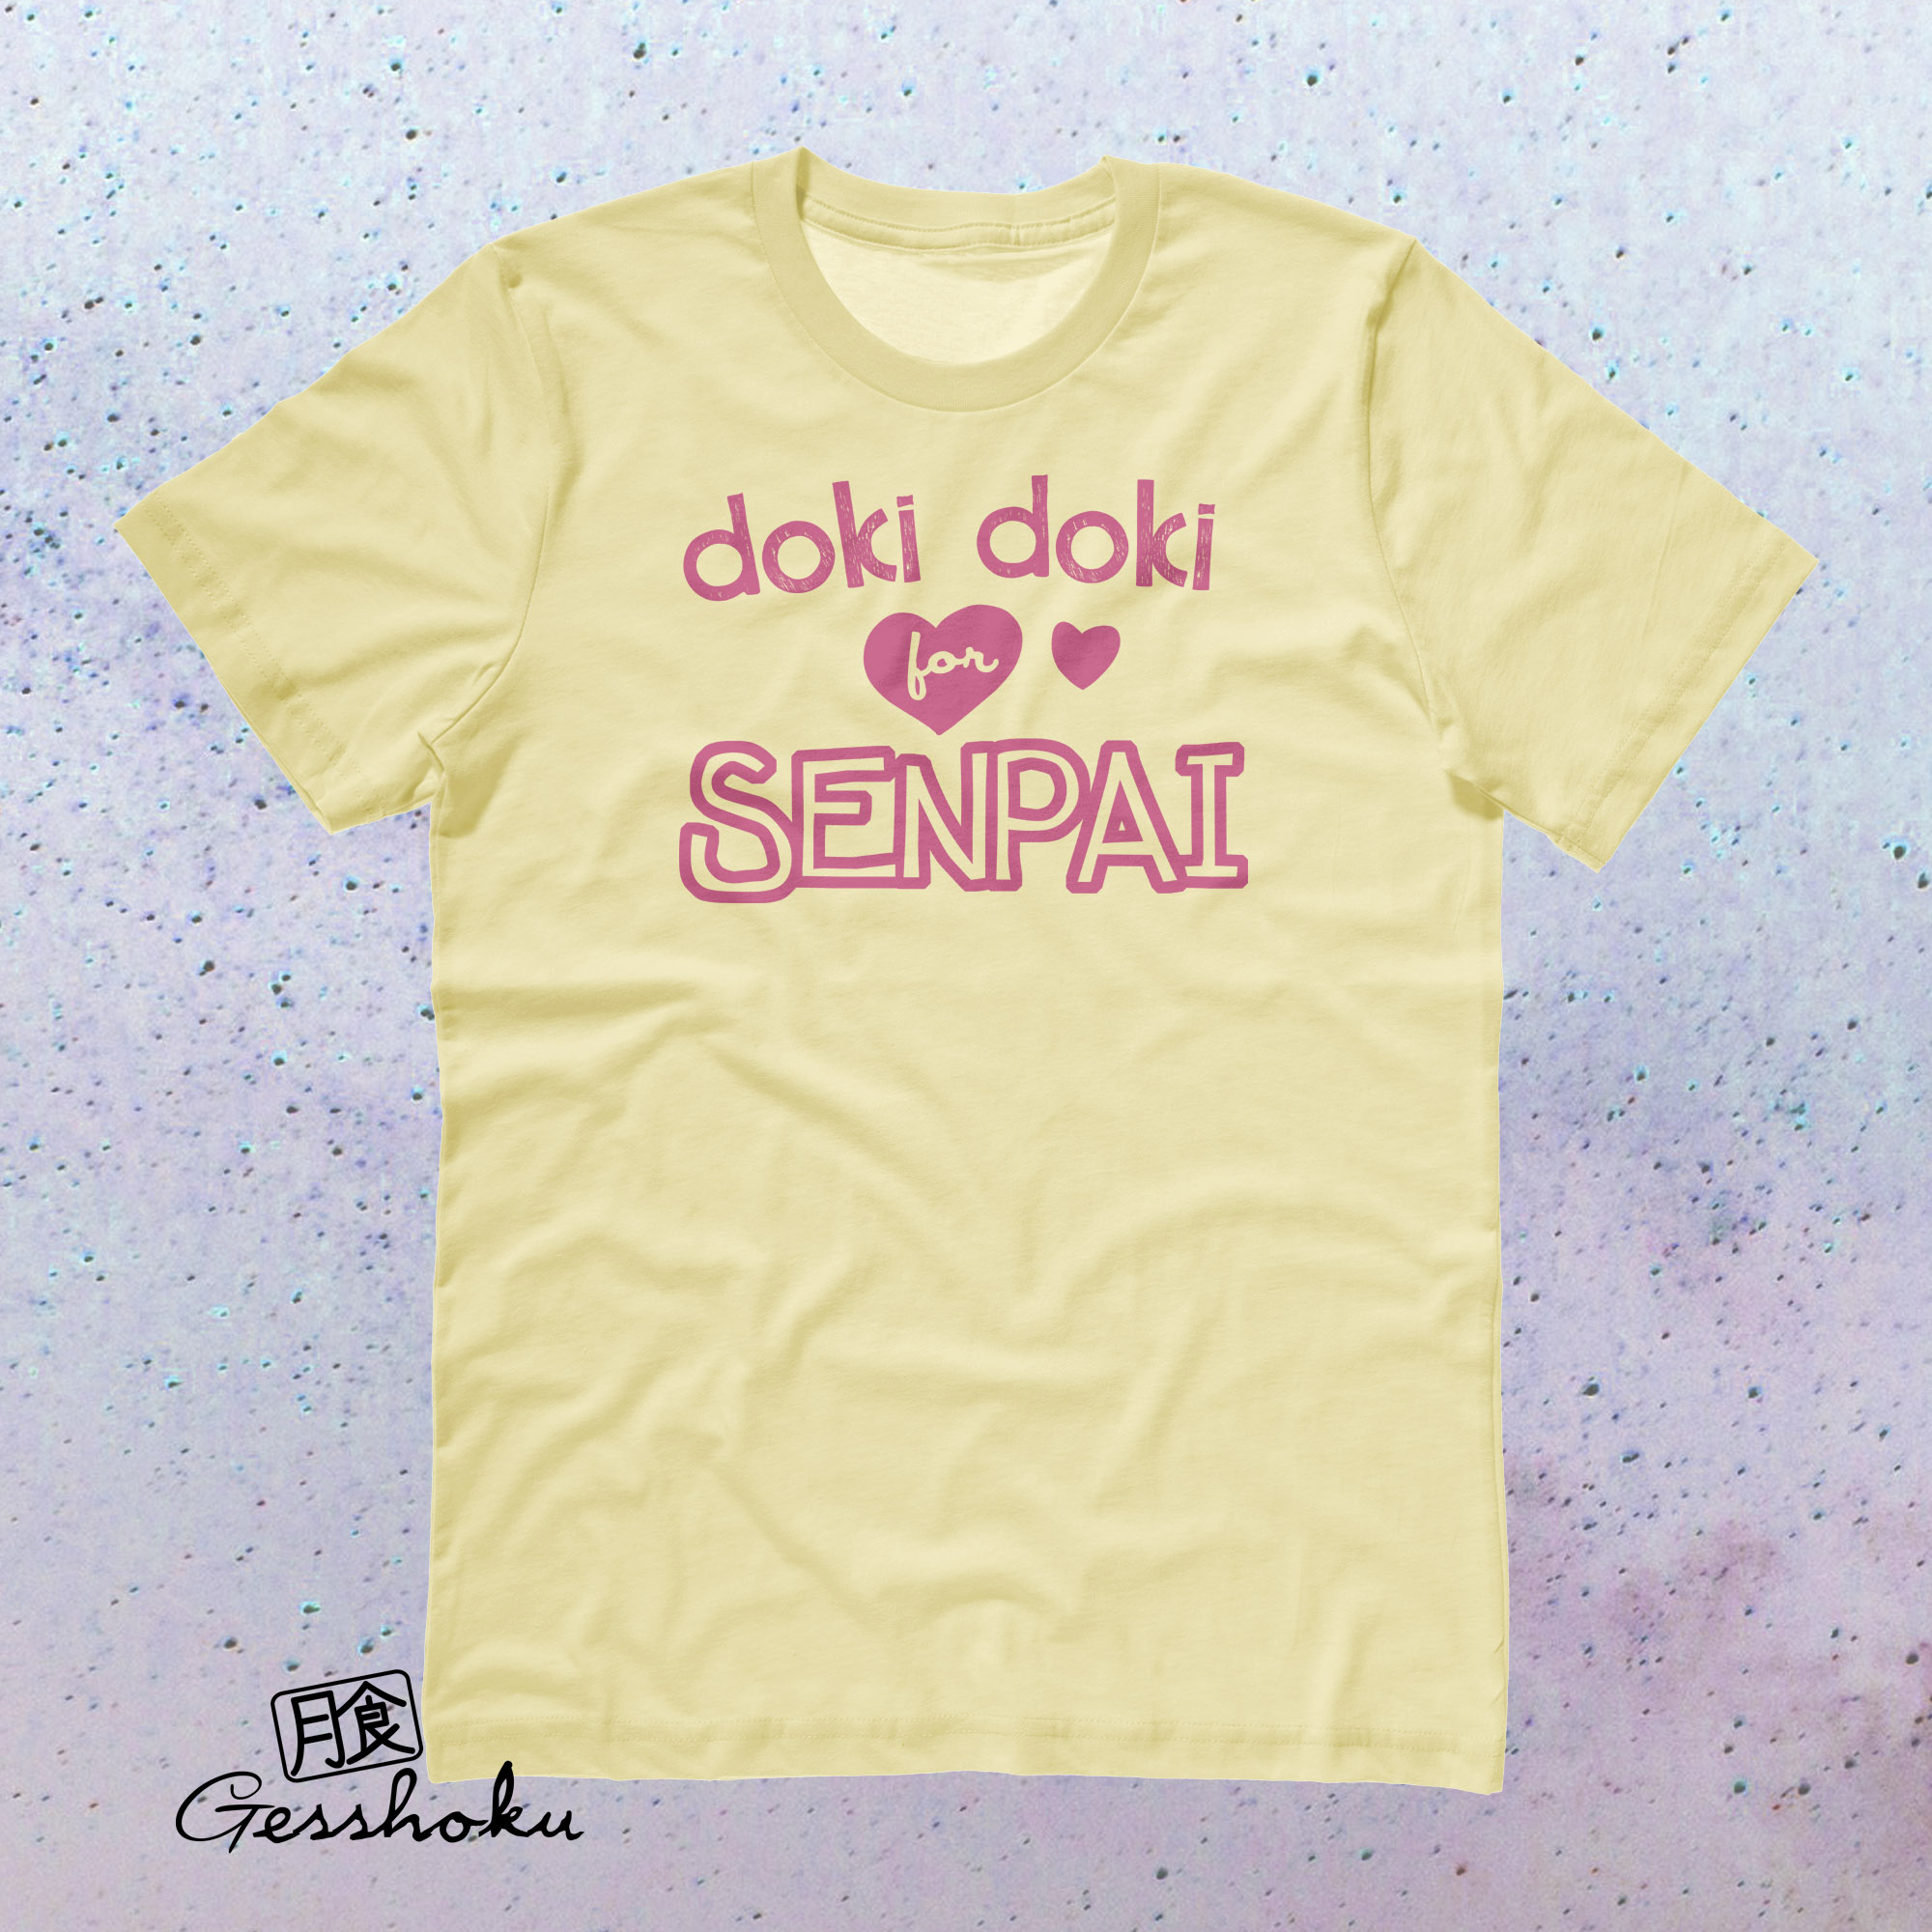 Doki Doki for Senpai T-shirt - Yellow